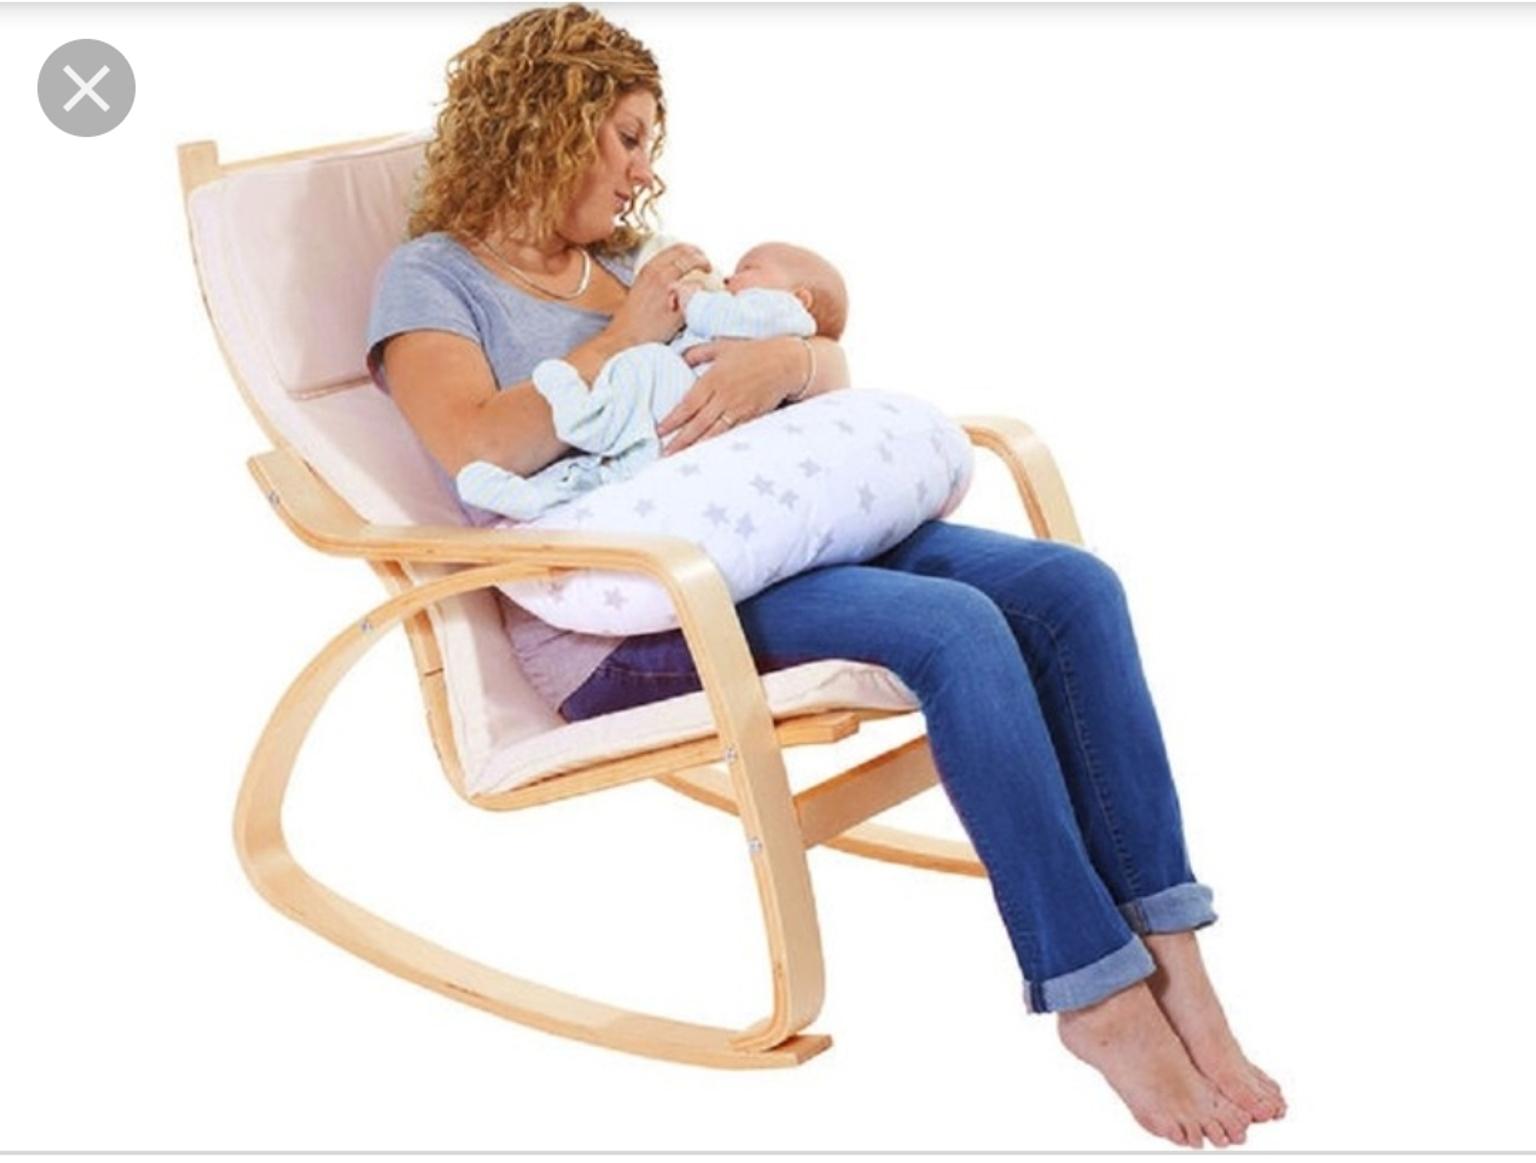 кресло качалка для молодой мамы